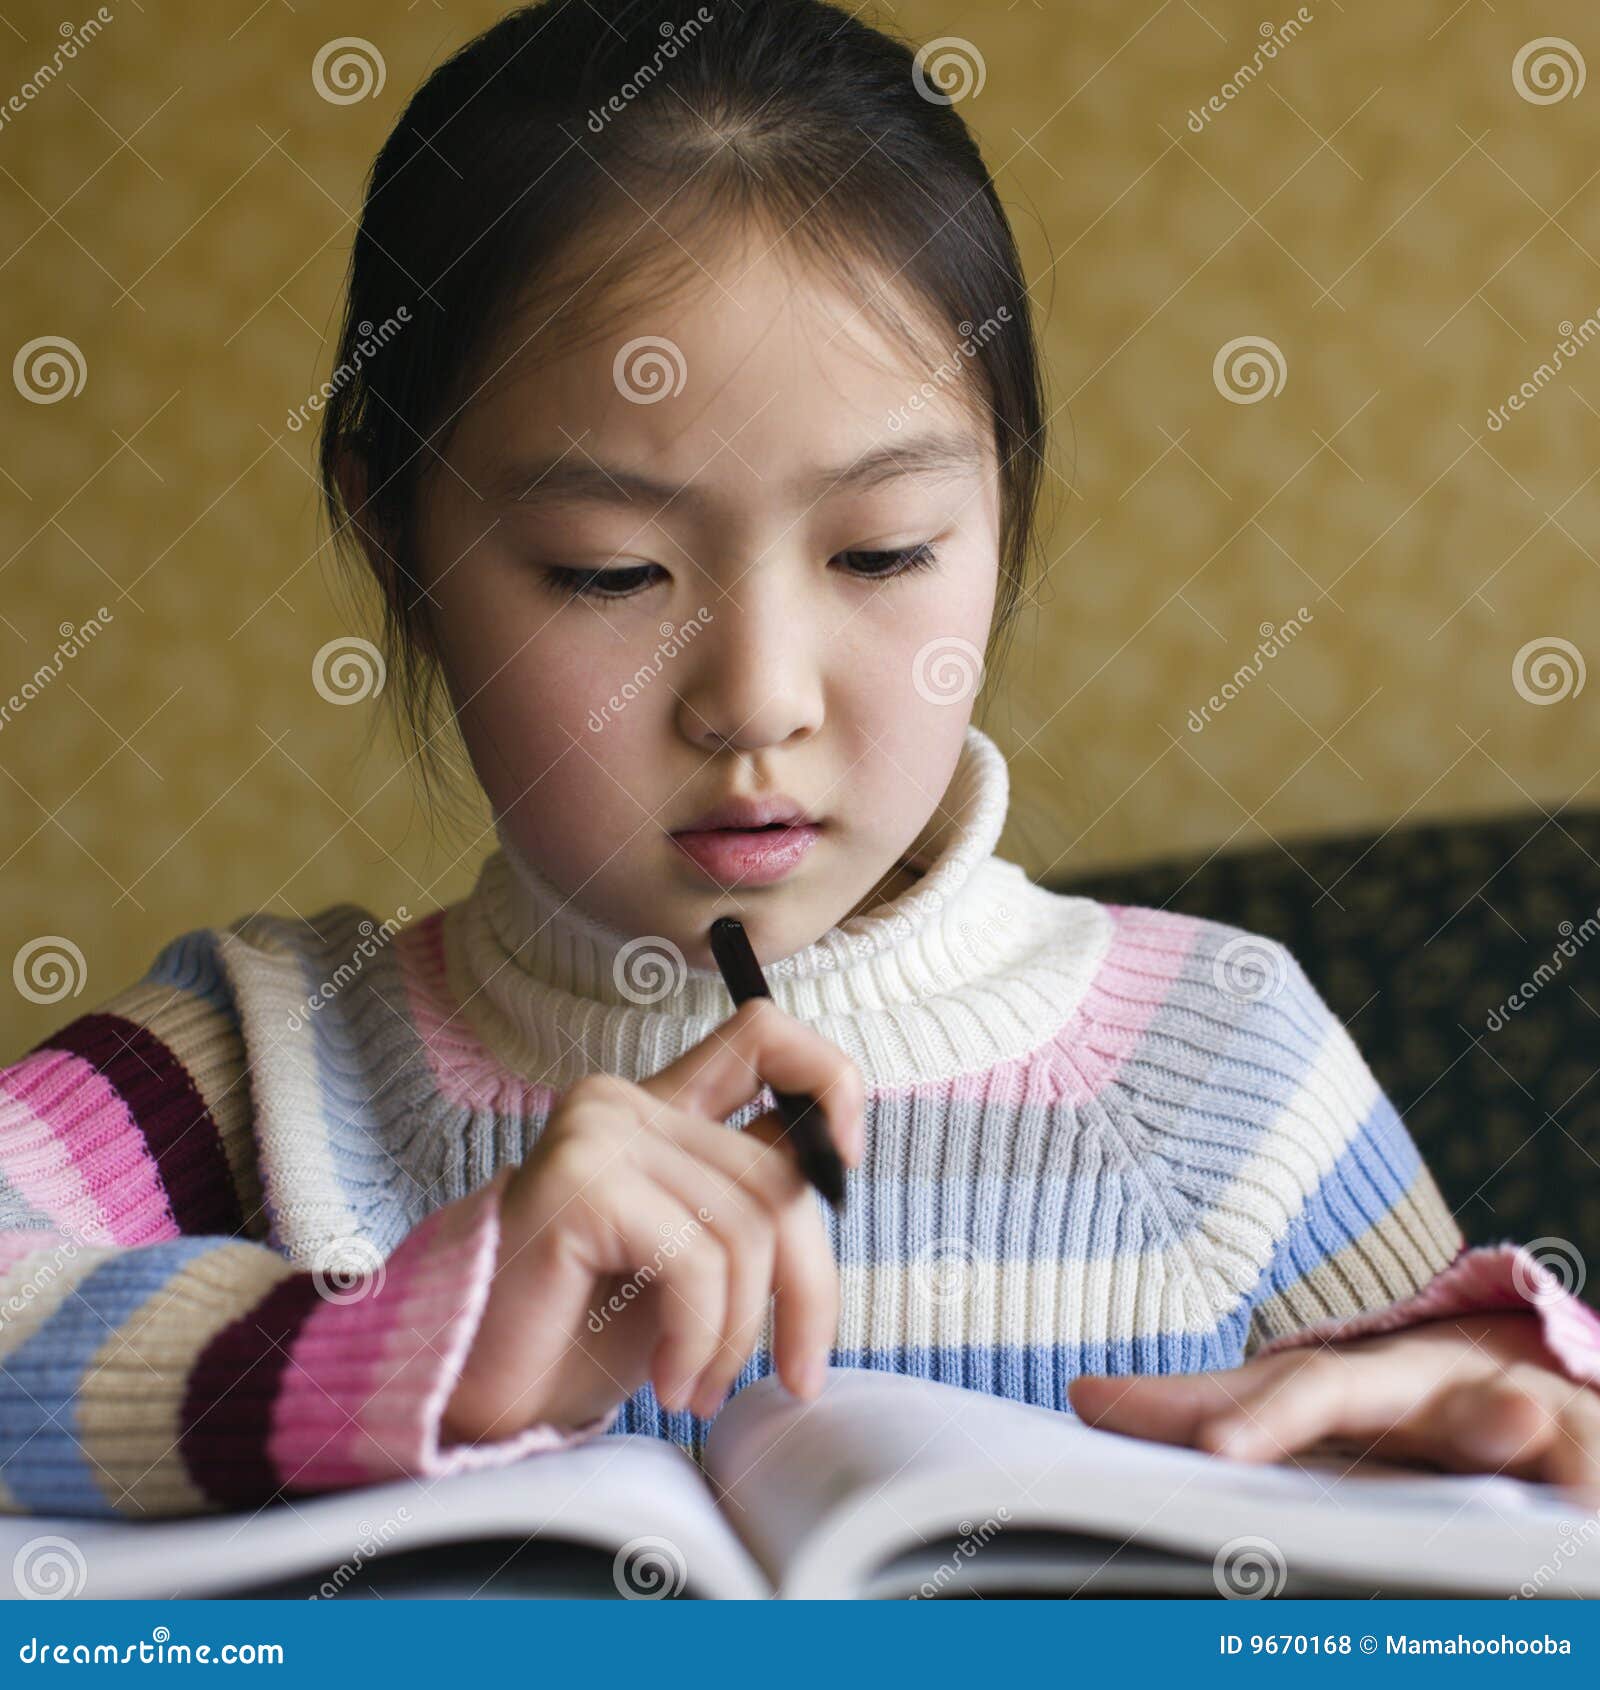 asian child doing homework